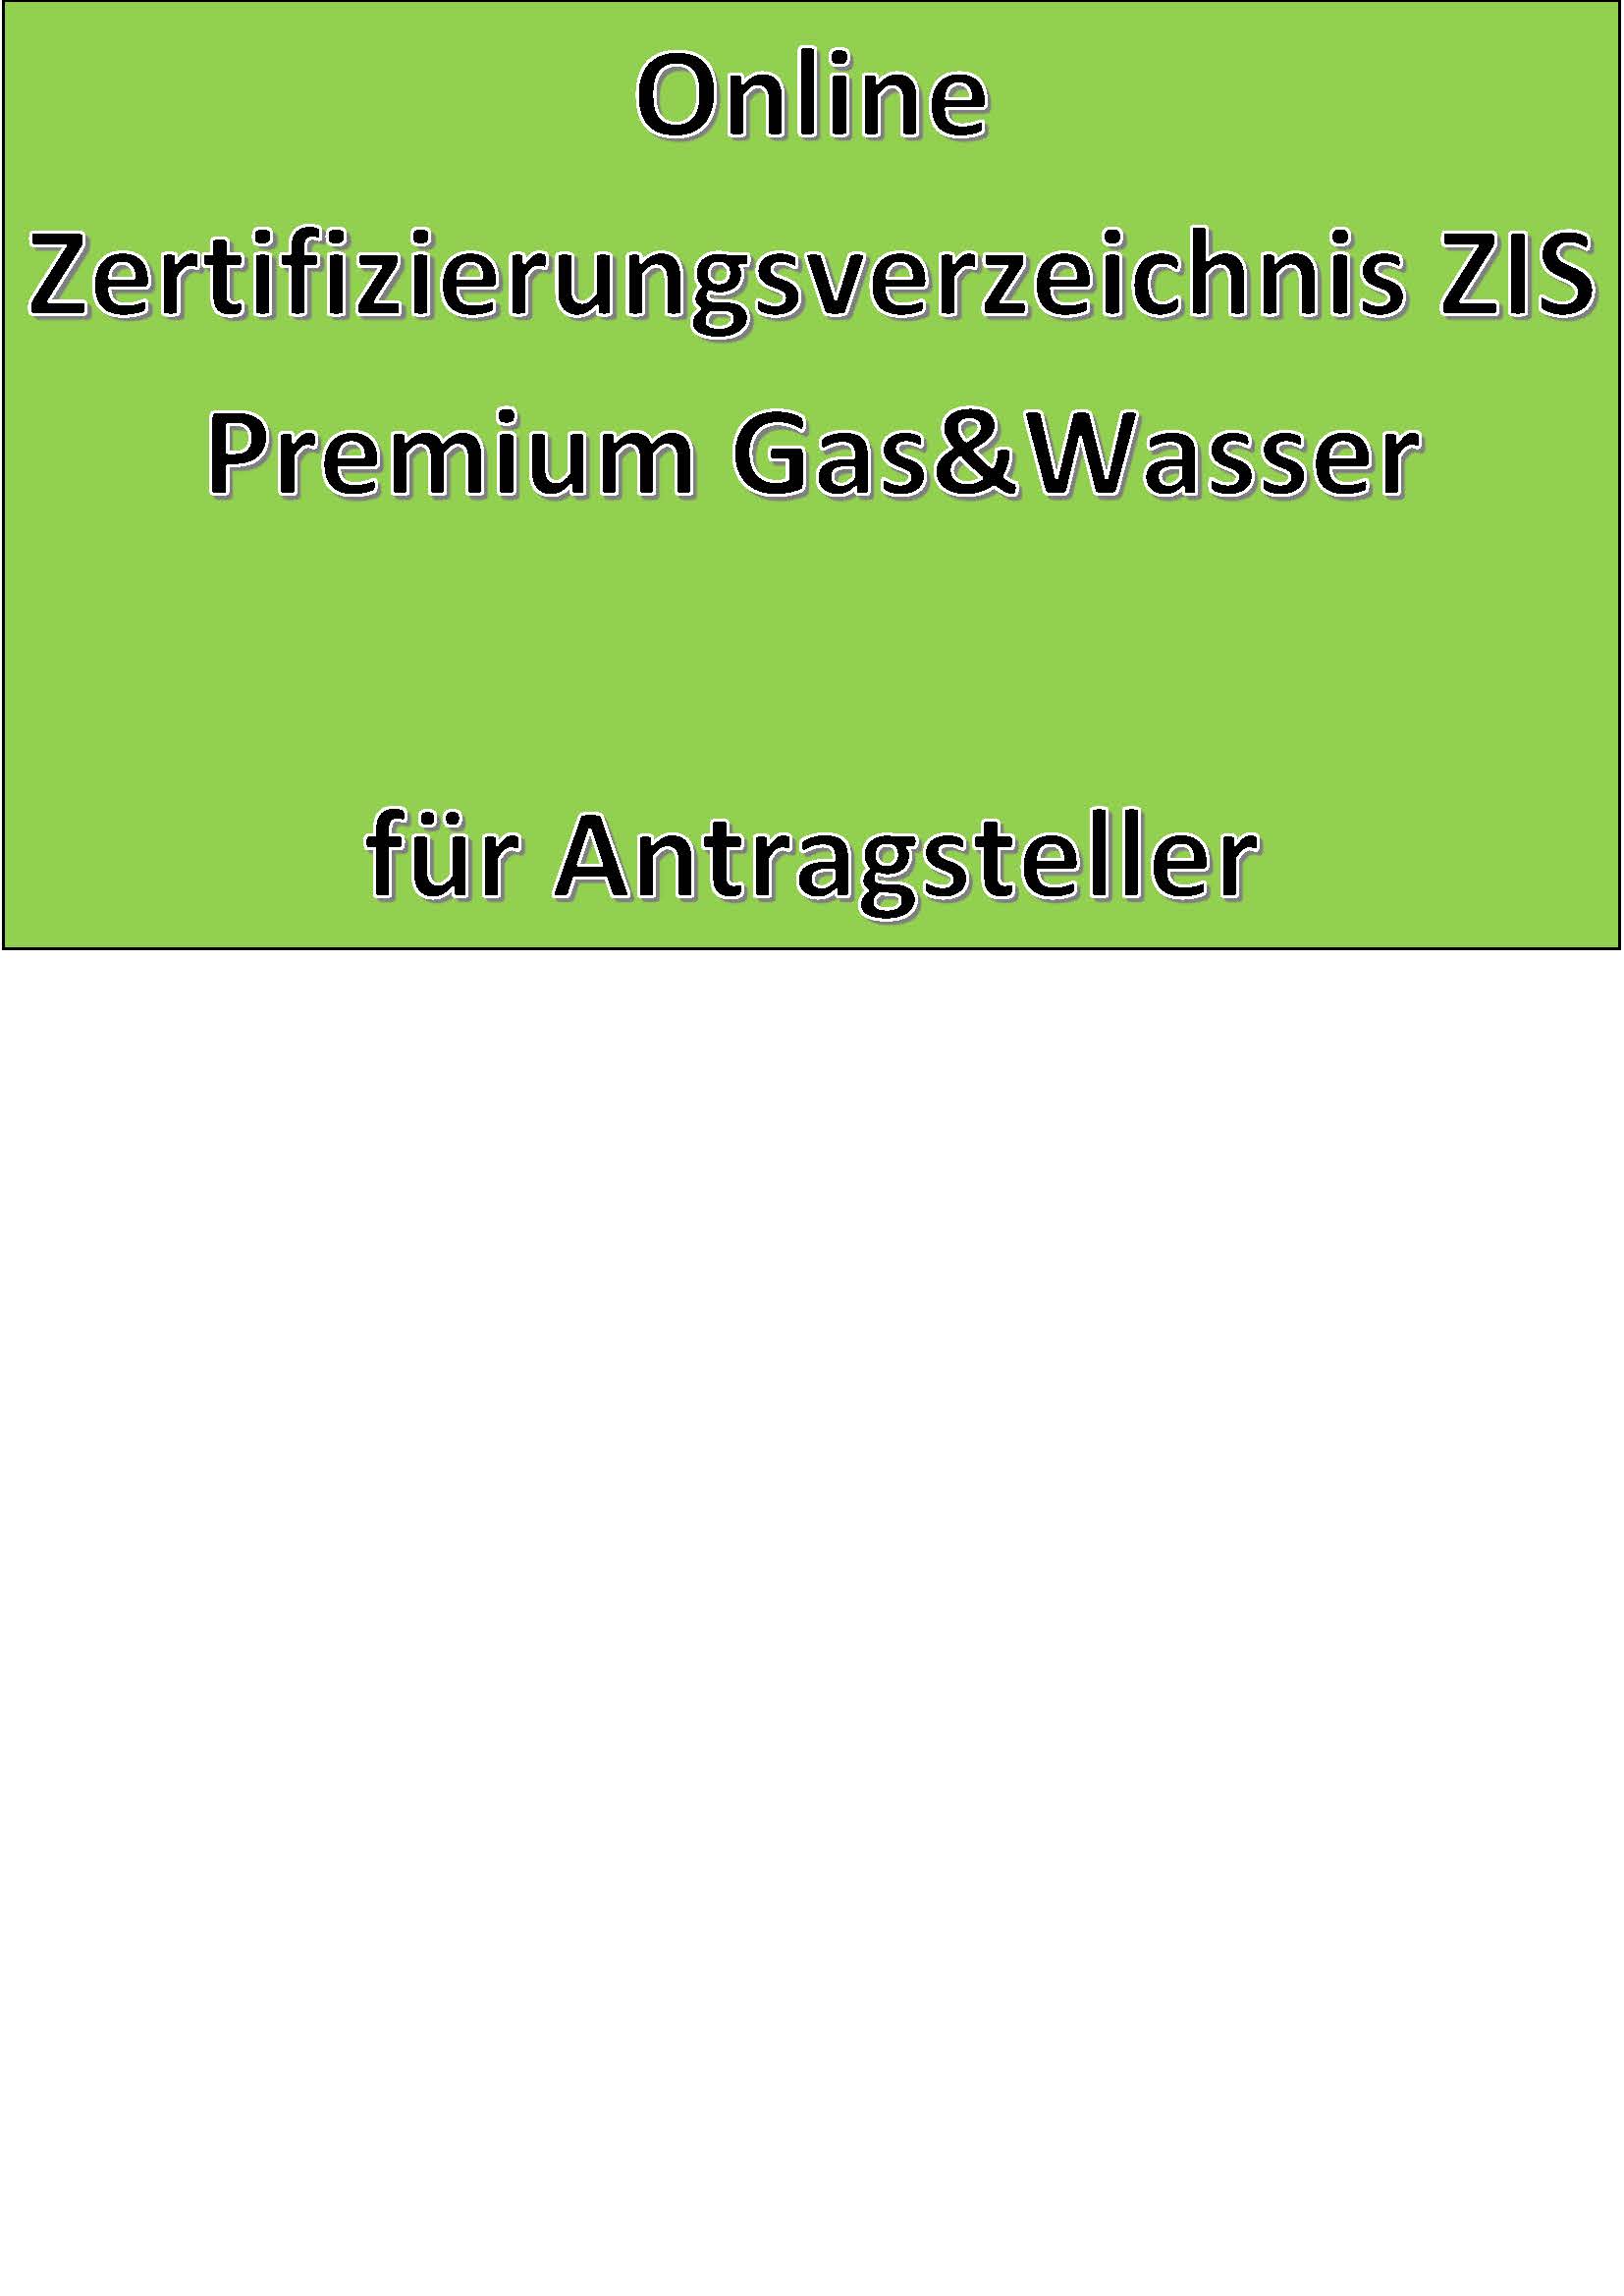 Online Zertifizierungsverzeichnis ZIS Premium Gas&Wasser für Antragsteller